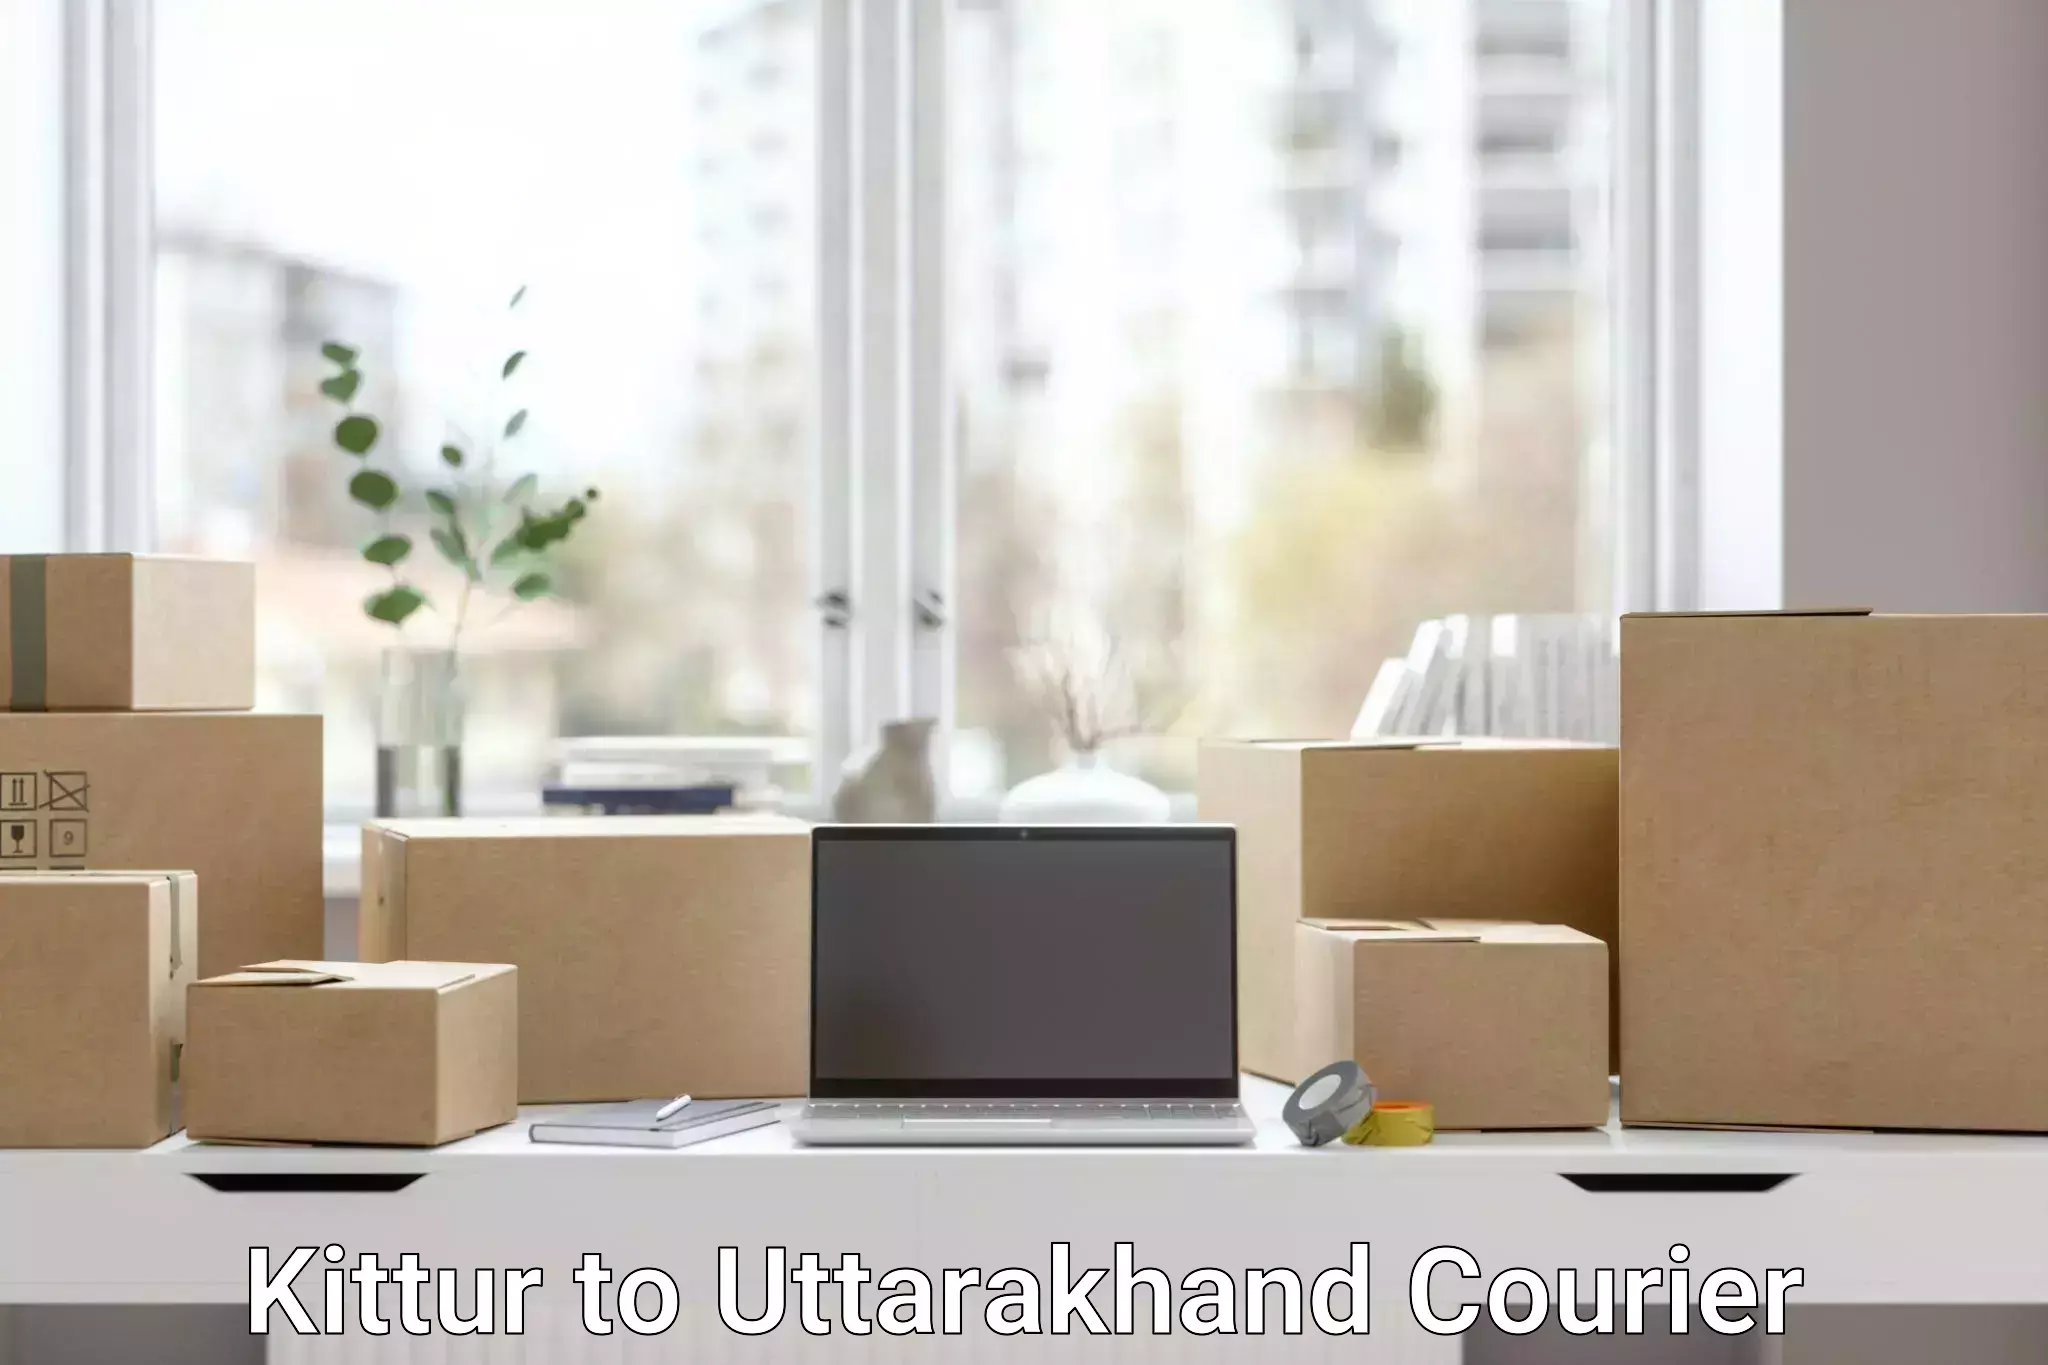 Nationwide shipping capabilities Kittur to Uttarakhand